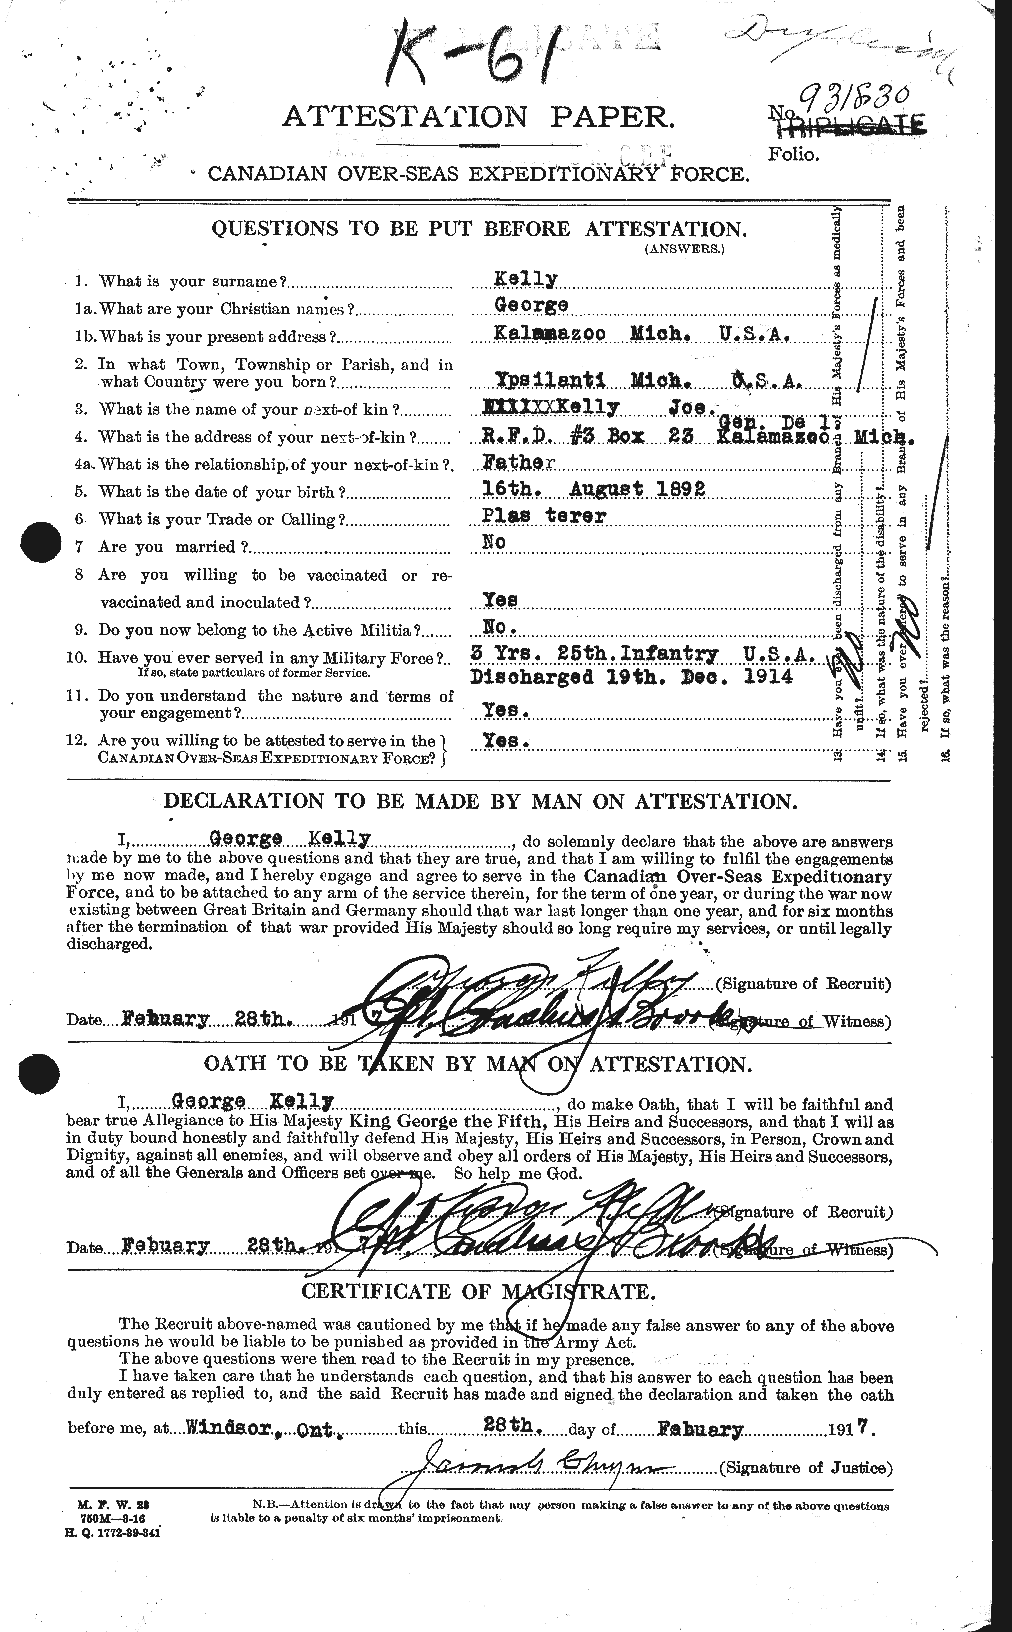 Dossiers du Personnel de la Première Guerre mondiale - CEC 431464a